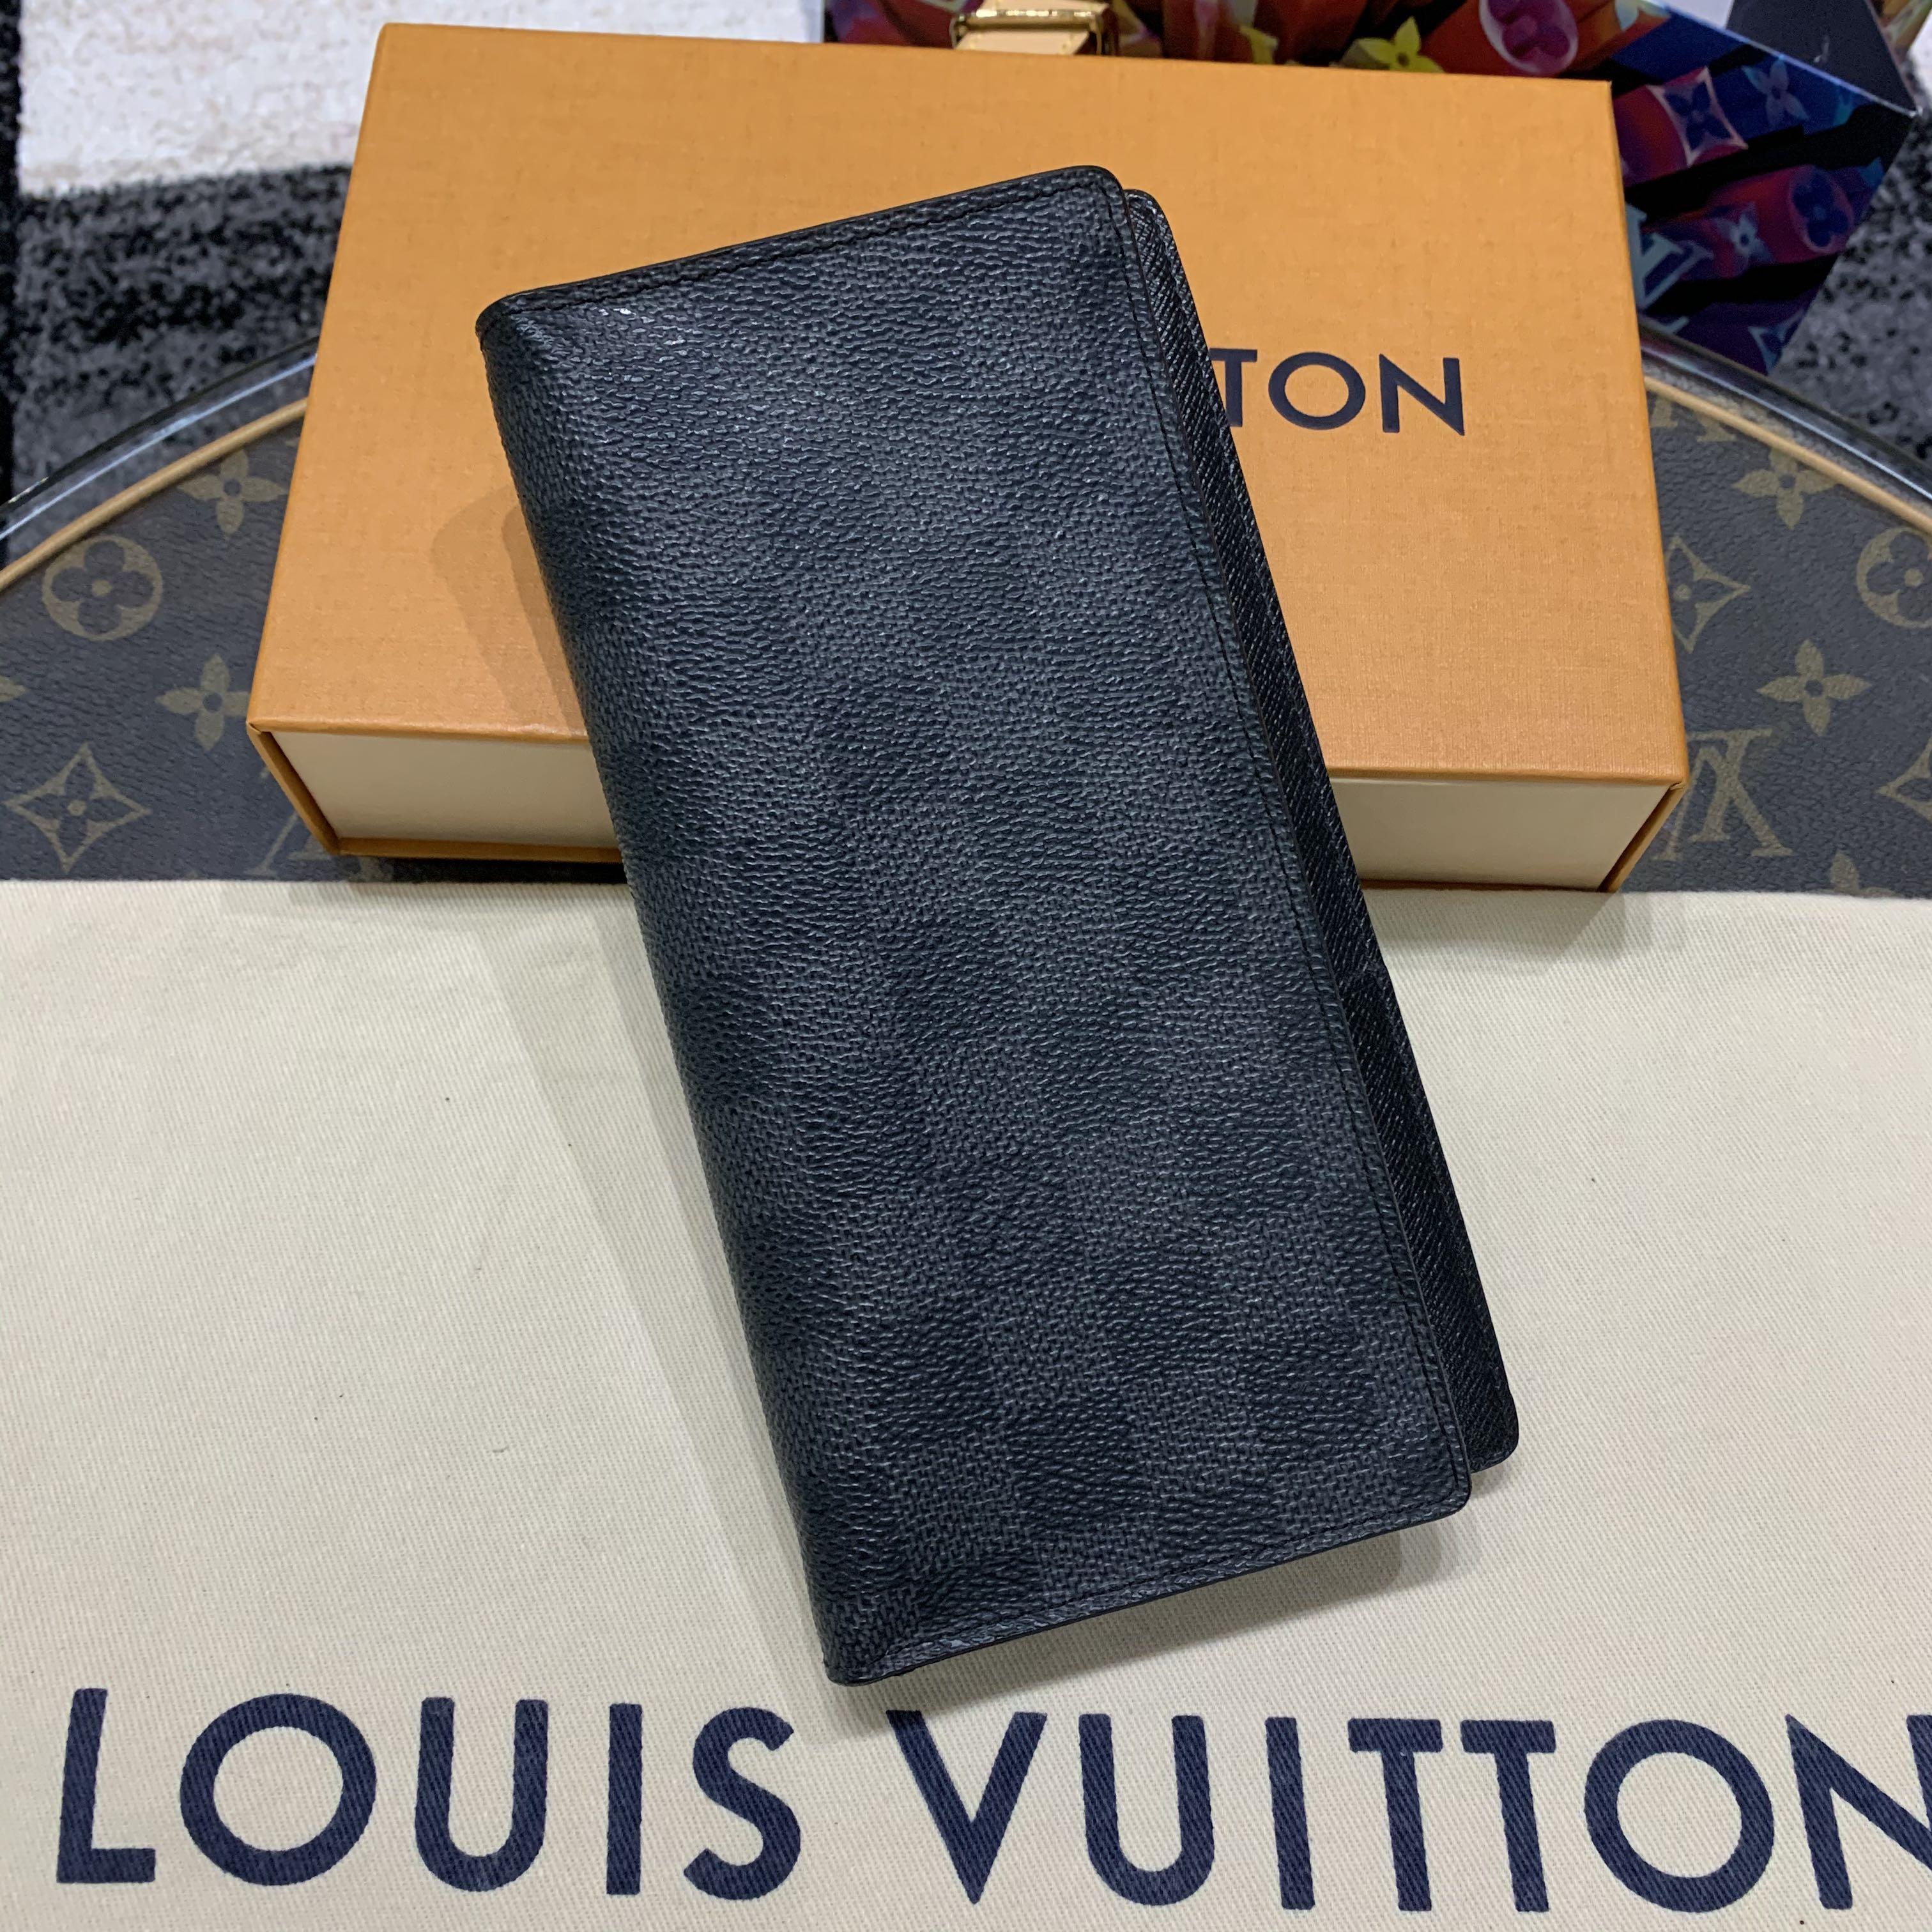 Louis Vuitton Brazza Wallet in Graphite Damier